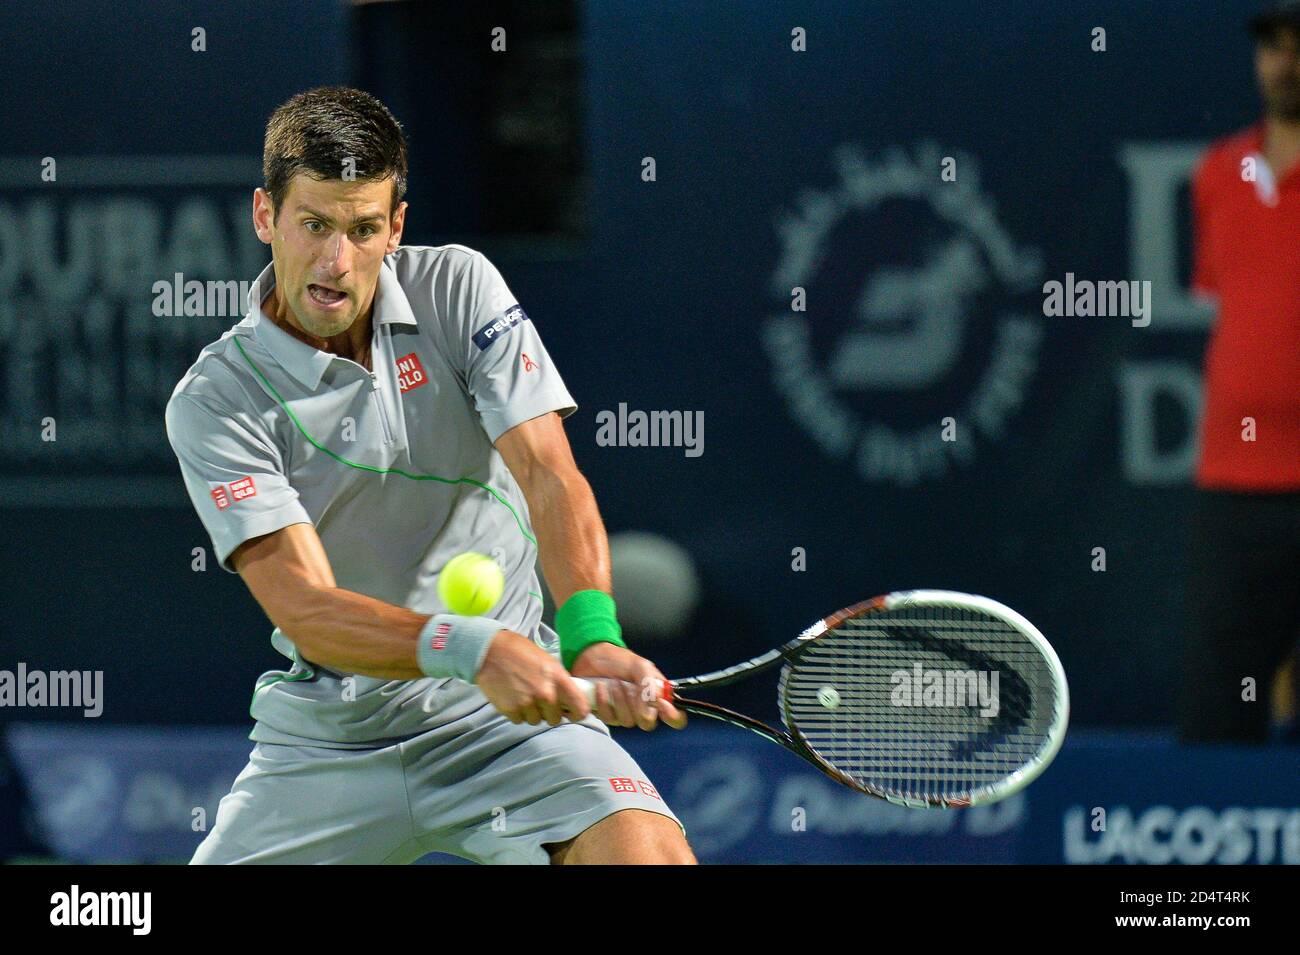 DUBAI, Emirati Arabi Uniti, 27 febbraio 2014. Novak Djokovic gioca una mano indietro contro Roger Federer nelle semifinali del Dubai Duty Free Tennis Championships. FEDER Foto Stock